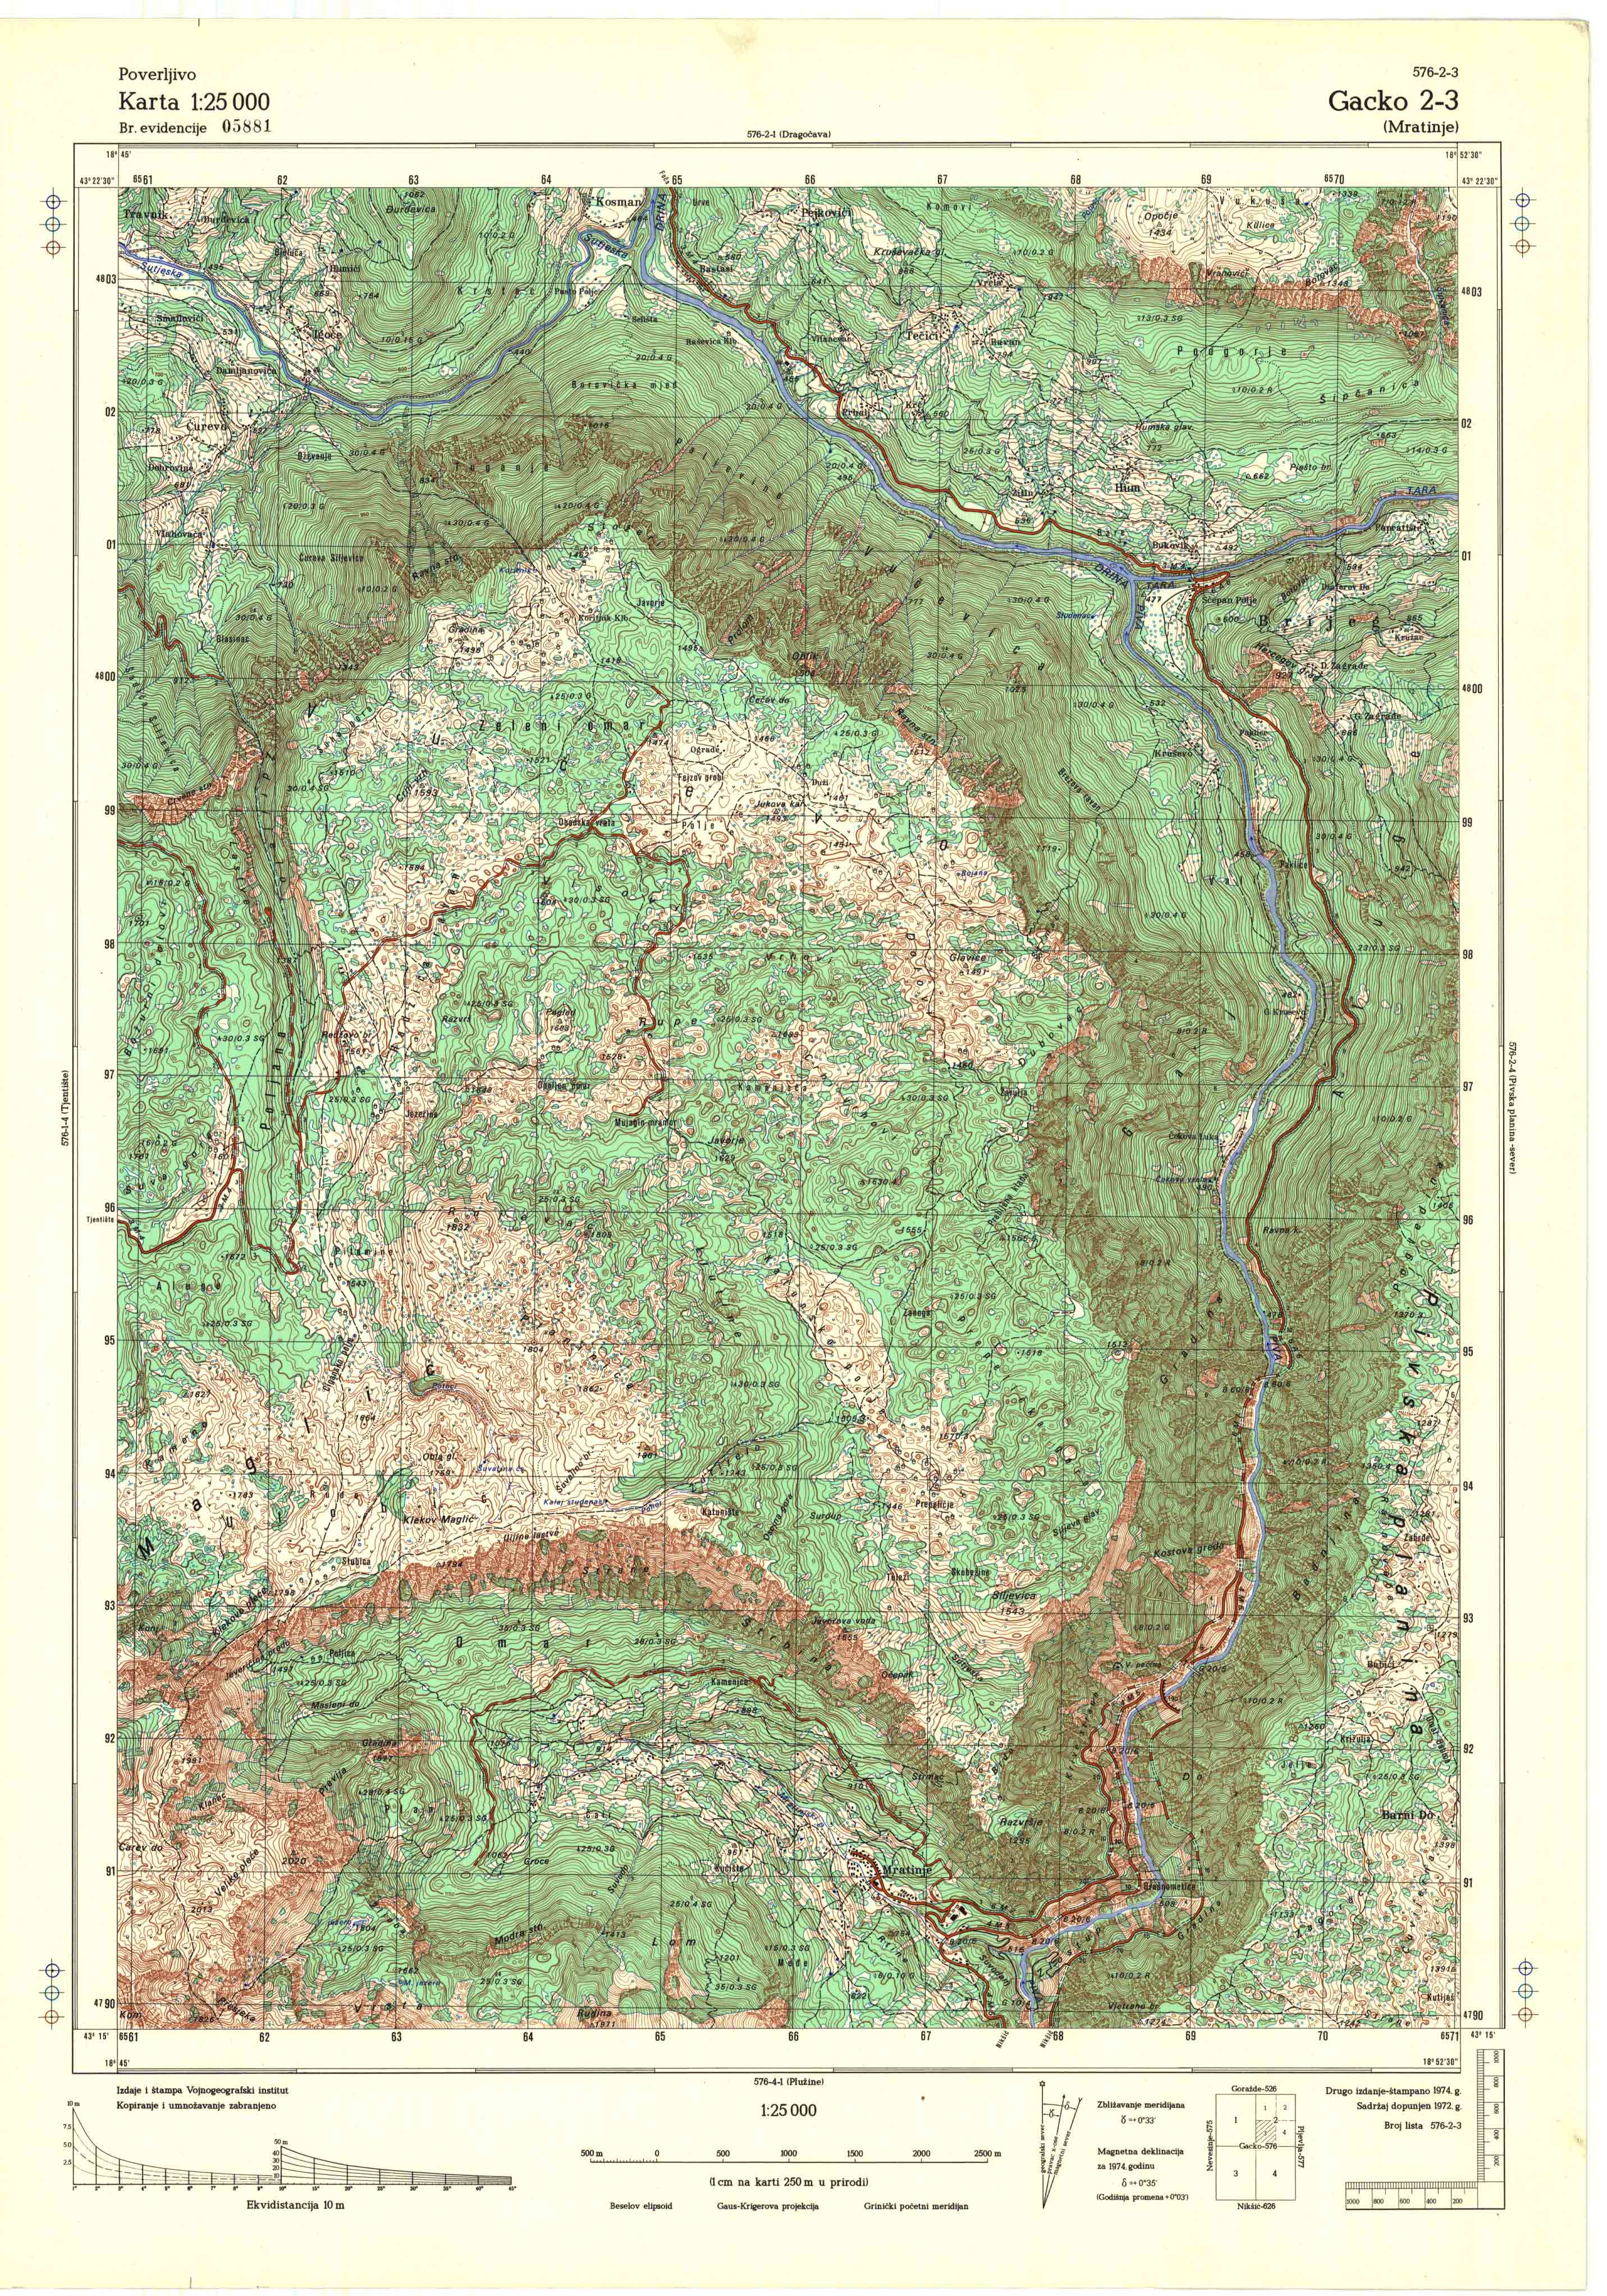  topografska karta srbije 25000 JNA  Gacko